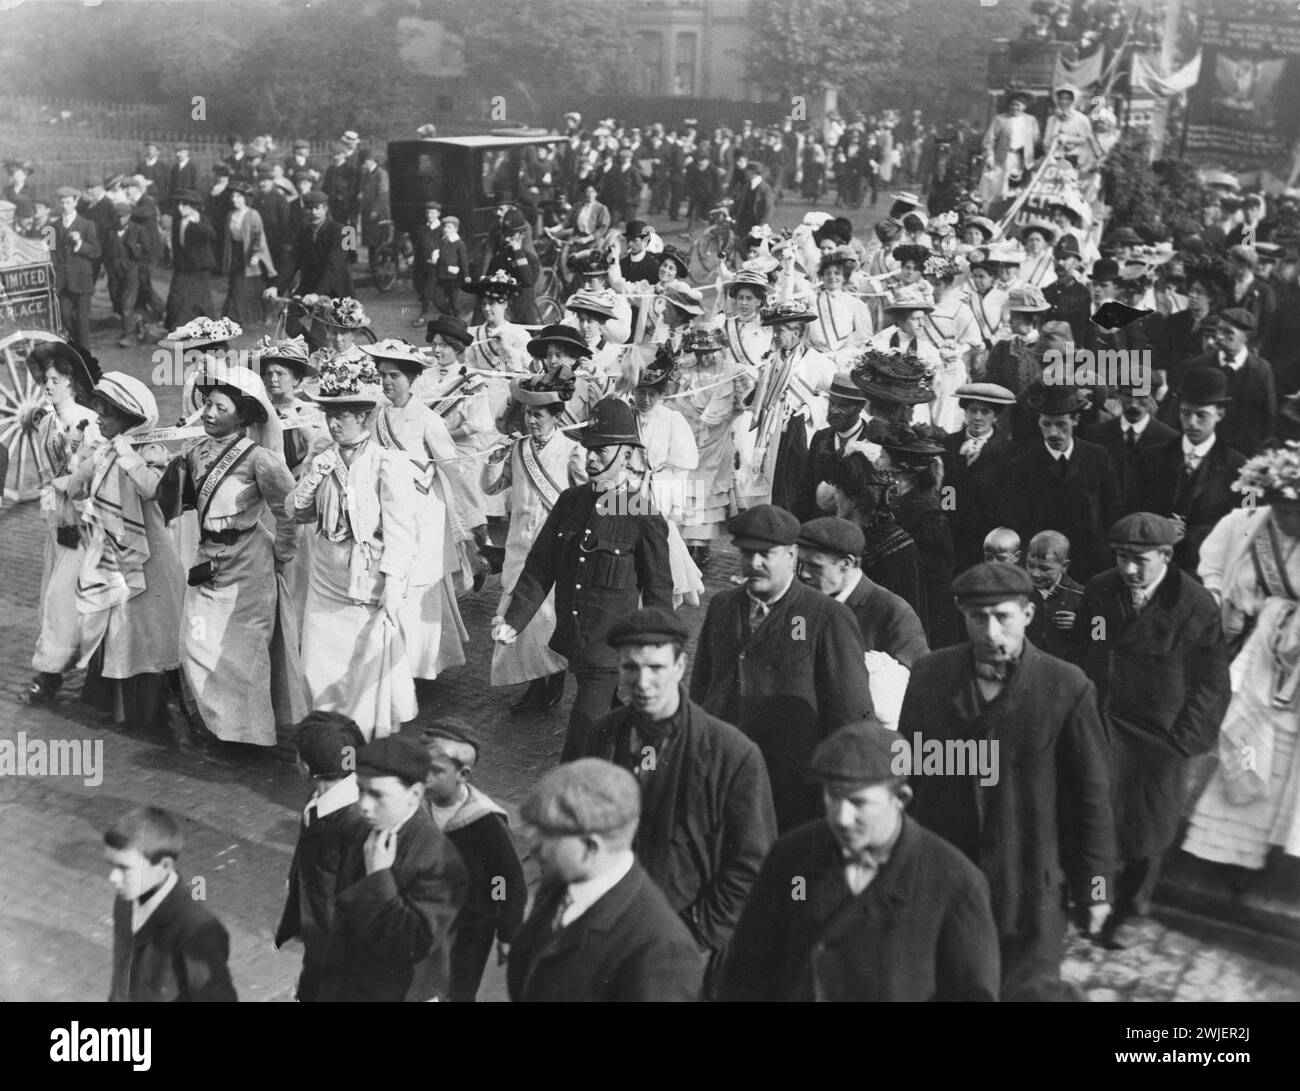 Suffragette di trattamento, Londra, Regno Unito c.1908. Tre file di donne vestite di bianco che indossano fasce "Vota per le donne" e nastri "Vota per le donne" sulle spalle. L'immagine mostra una delle squadre della Womens Social & Political Union (WSPU) che ha trascinato via da Holloway la carrozza dei prigionieri rilasciati Foto Stock